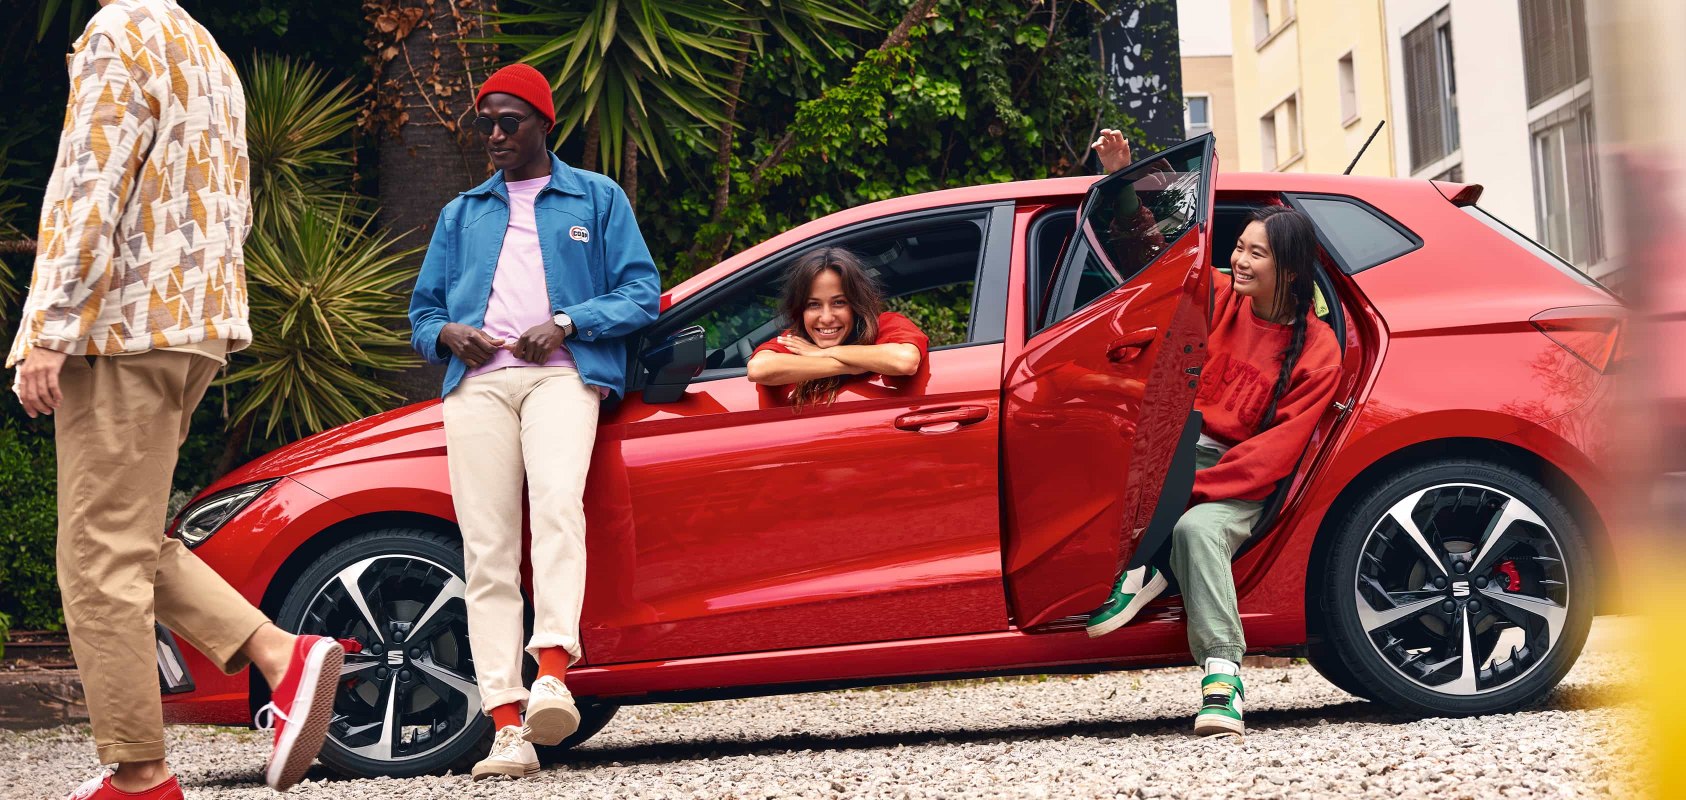 Amics que passen l'estona amb SEAT Ibiza desiree de color vermell